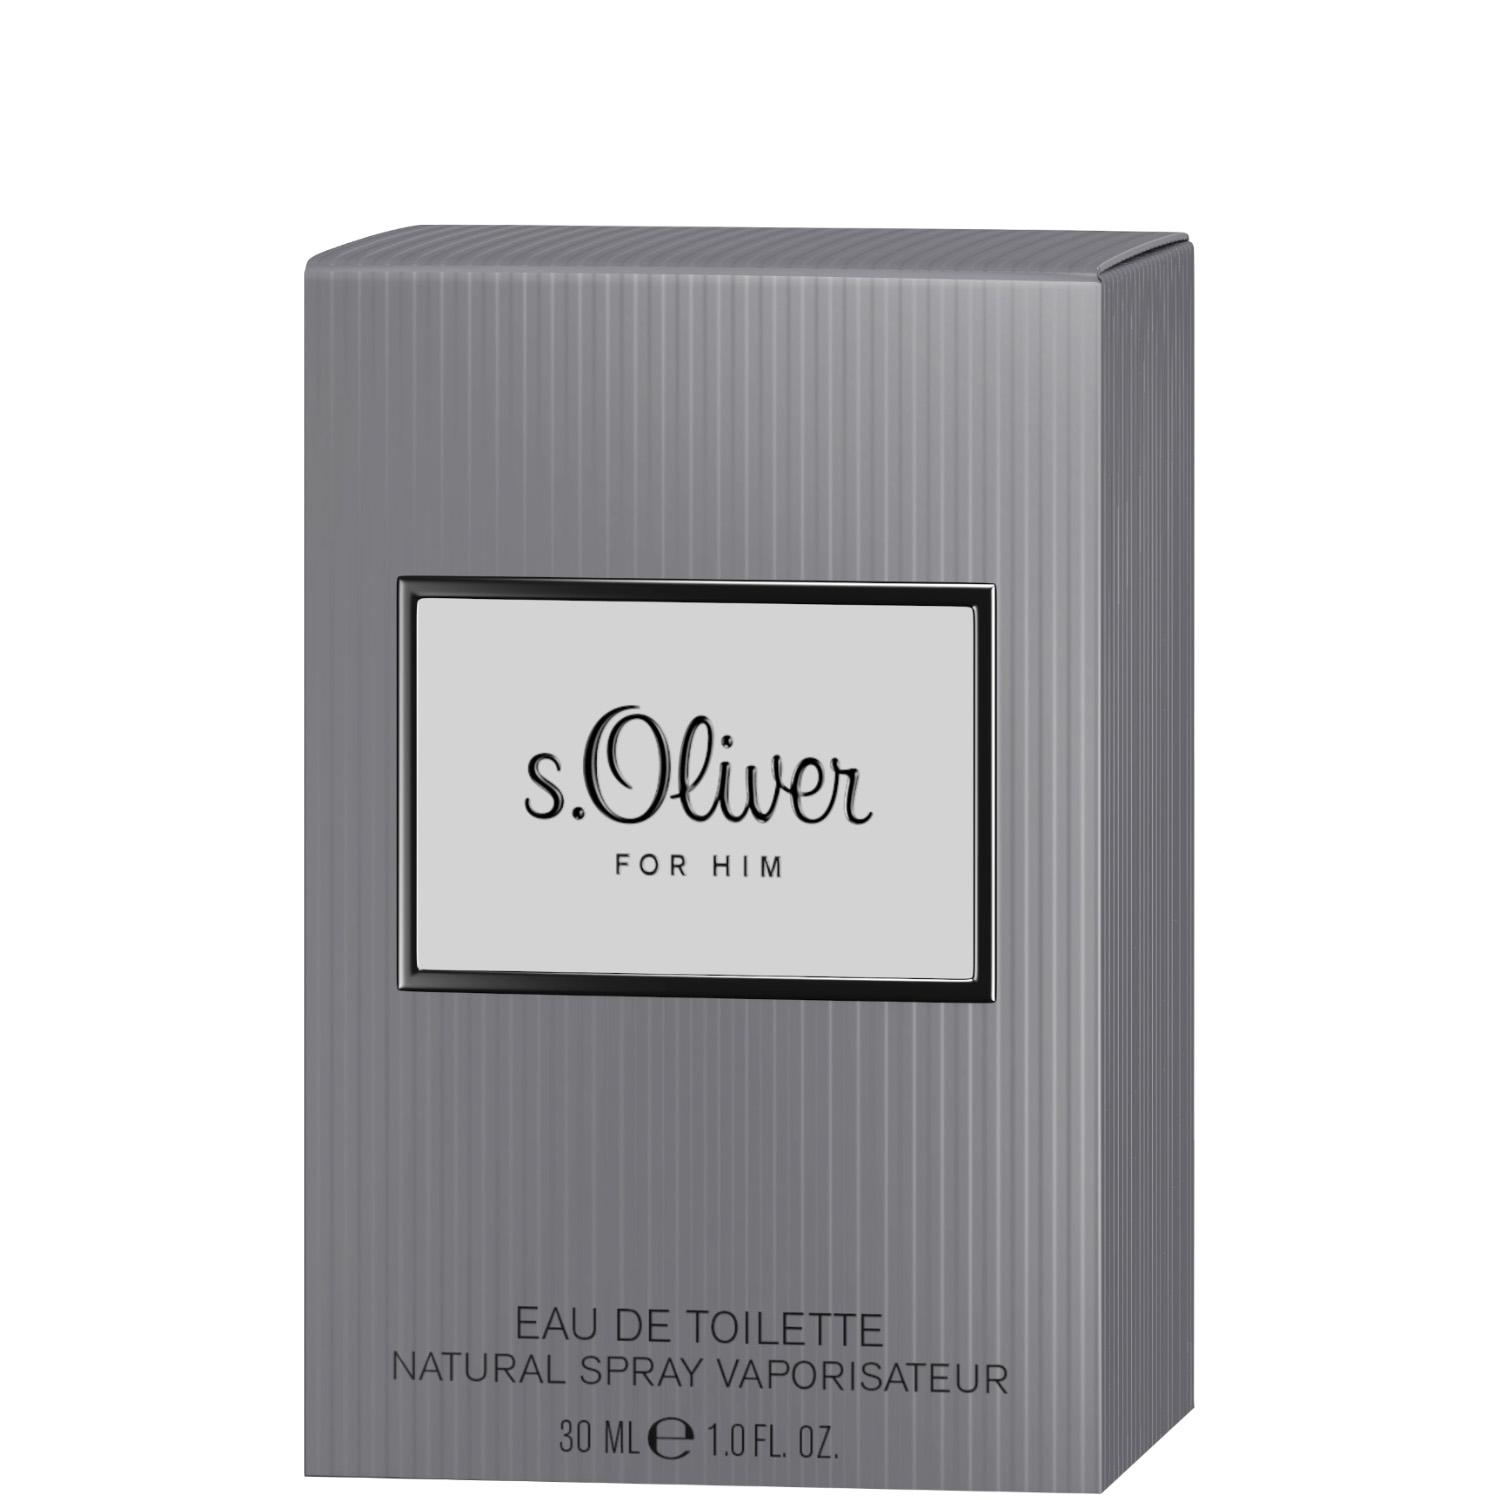 S.Oliver for Him Eau de Toilette 30ml